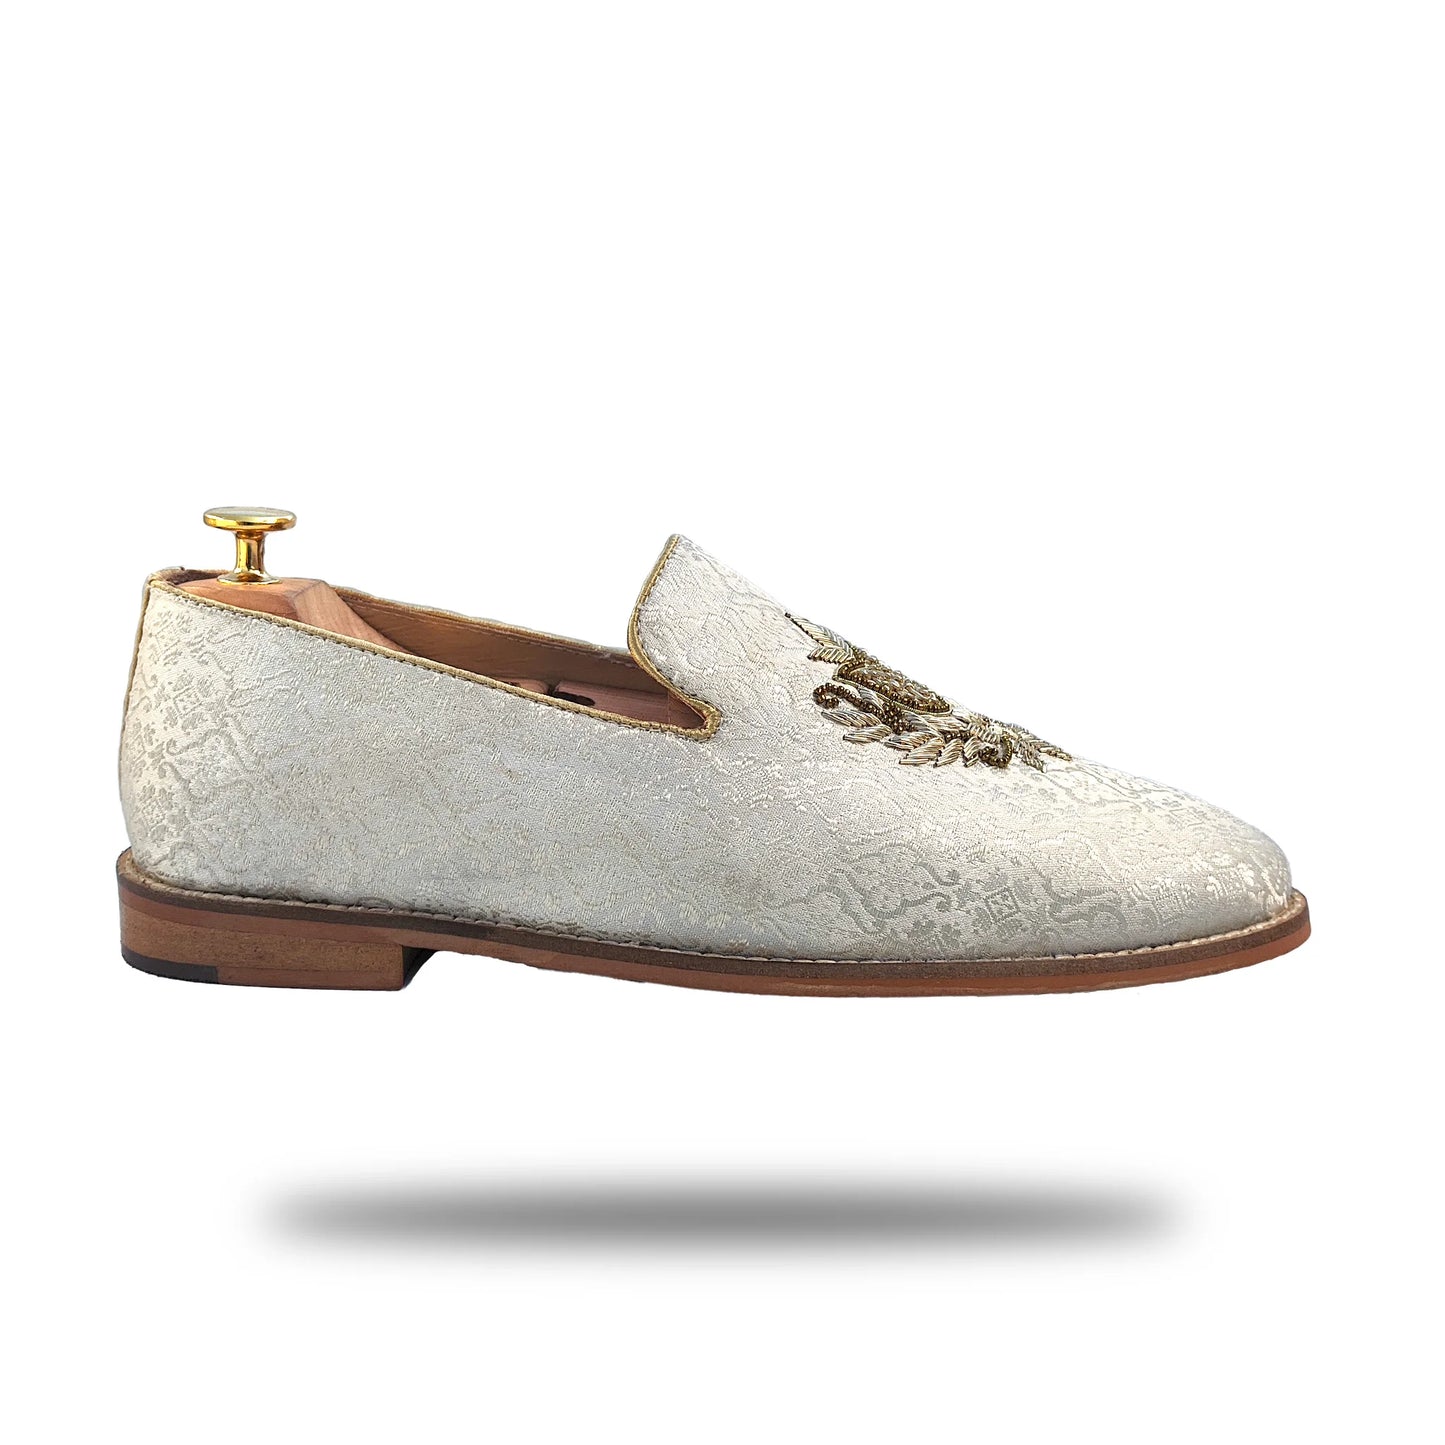 White Brocket Light Gold Zardozi Handwork Wedding Shoes Ethnic Loafers for Men